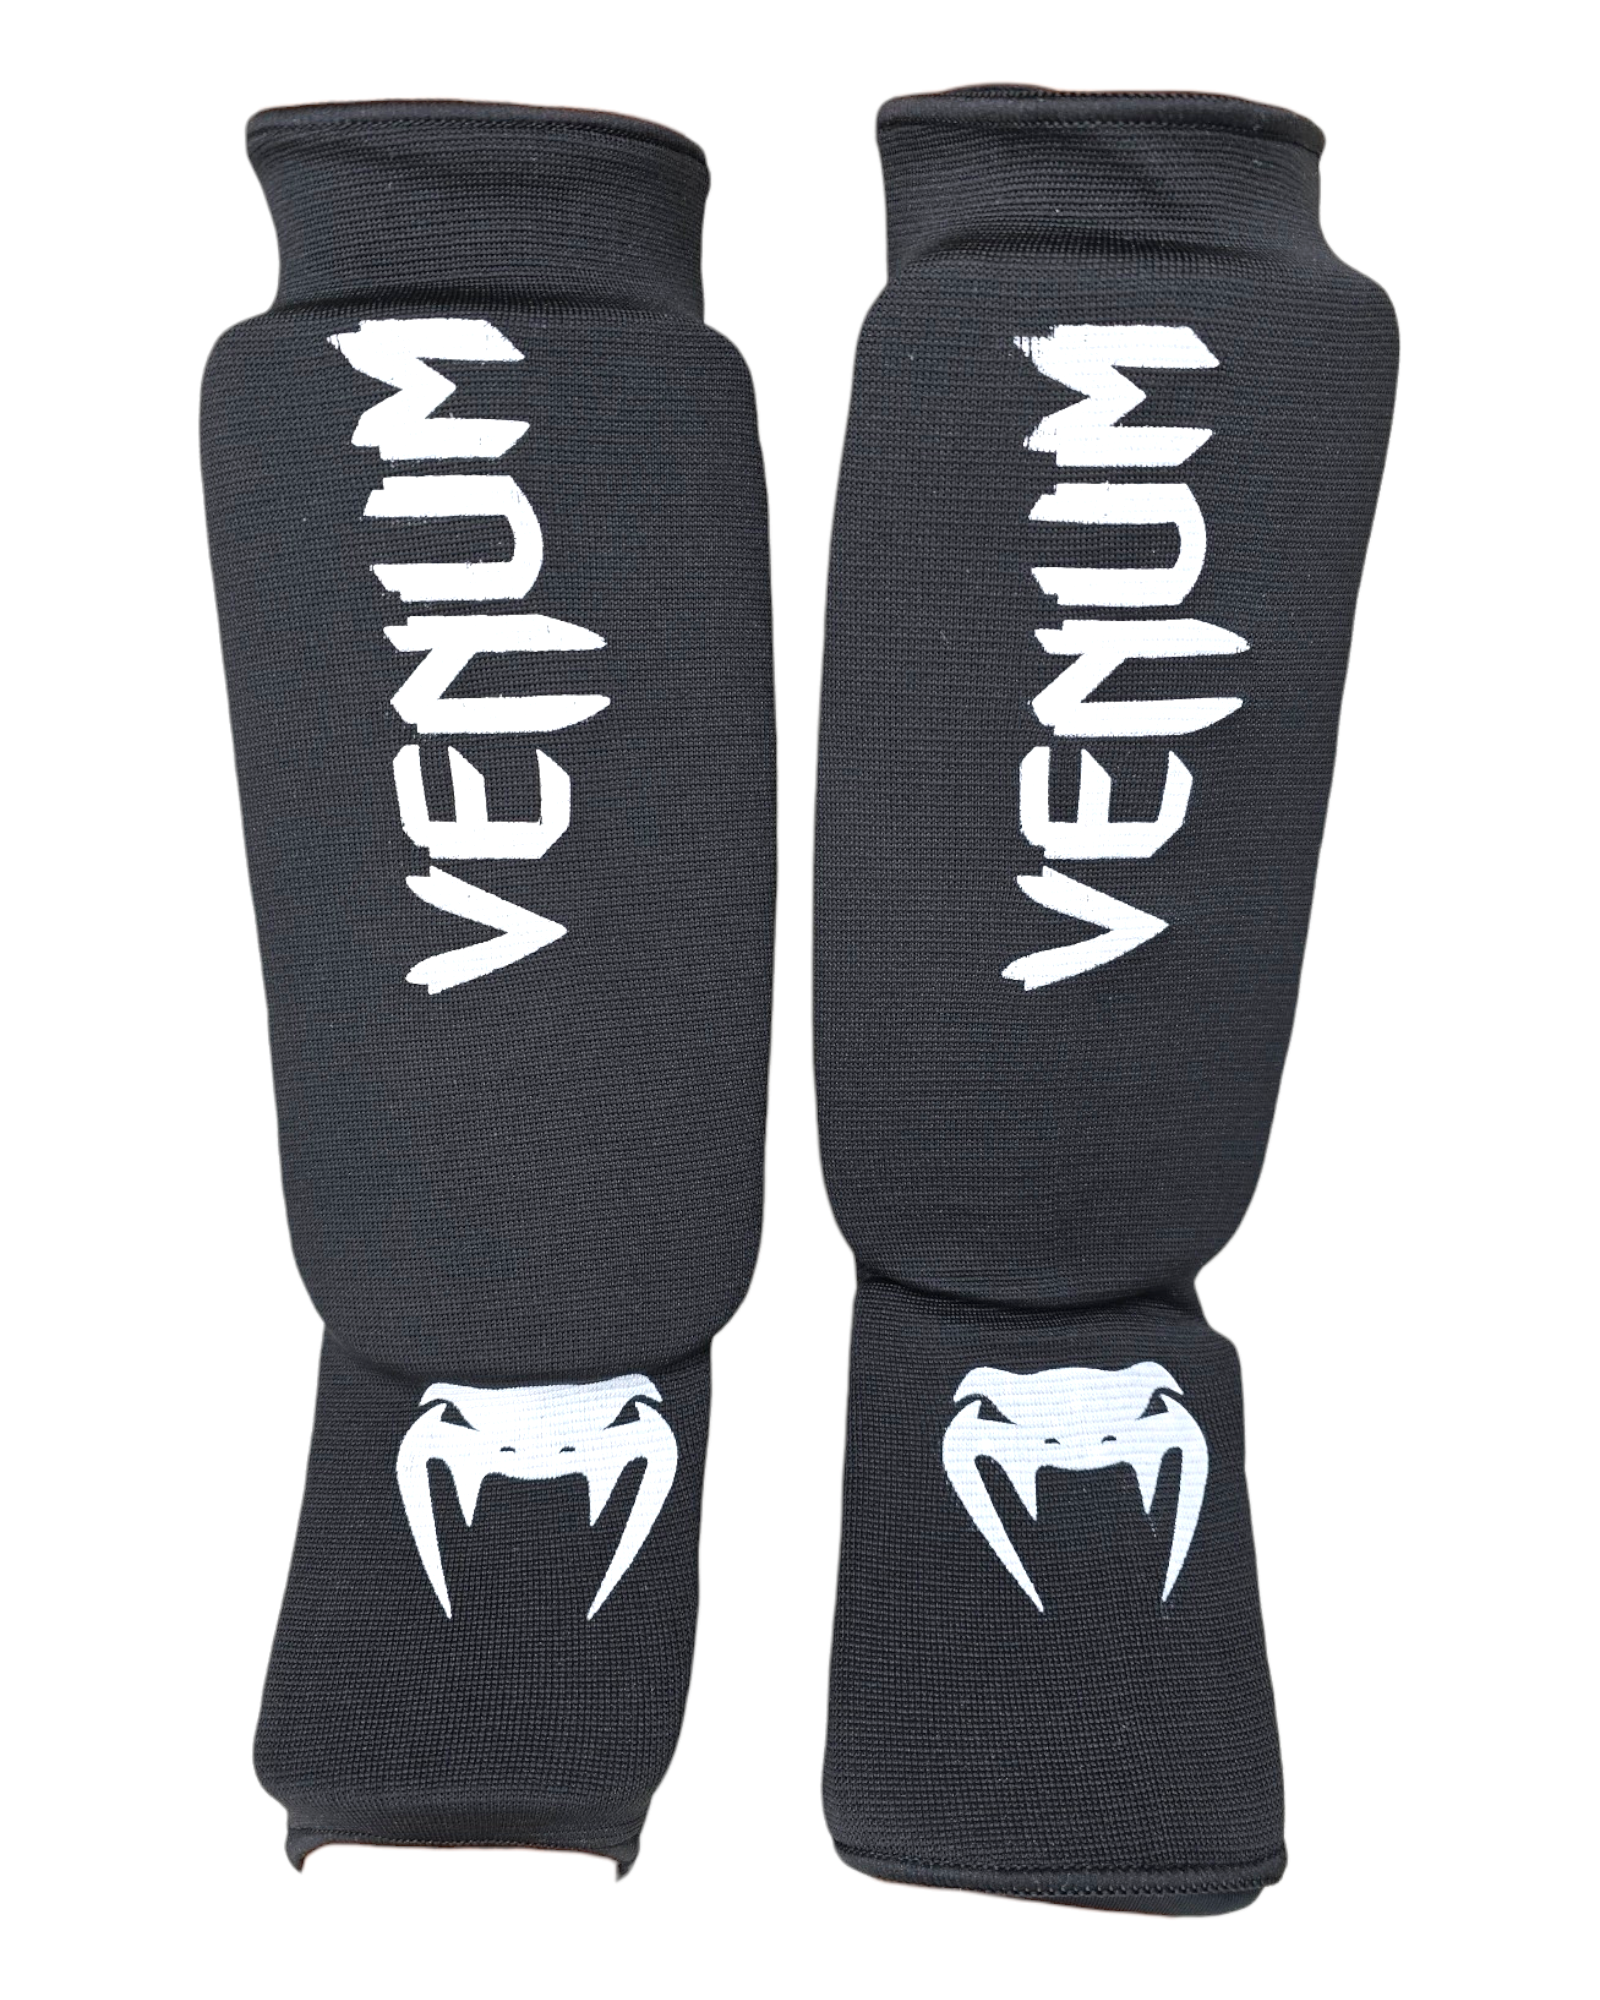 Щитки Защита голени стопы Venum - Venum BLACK (S)